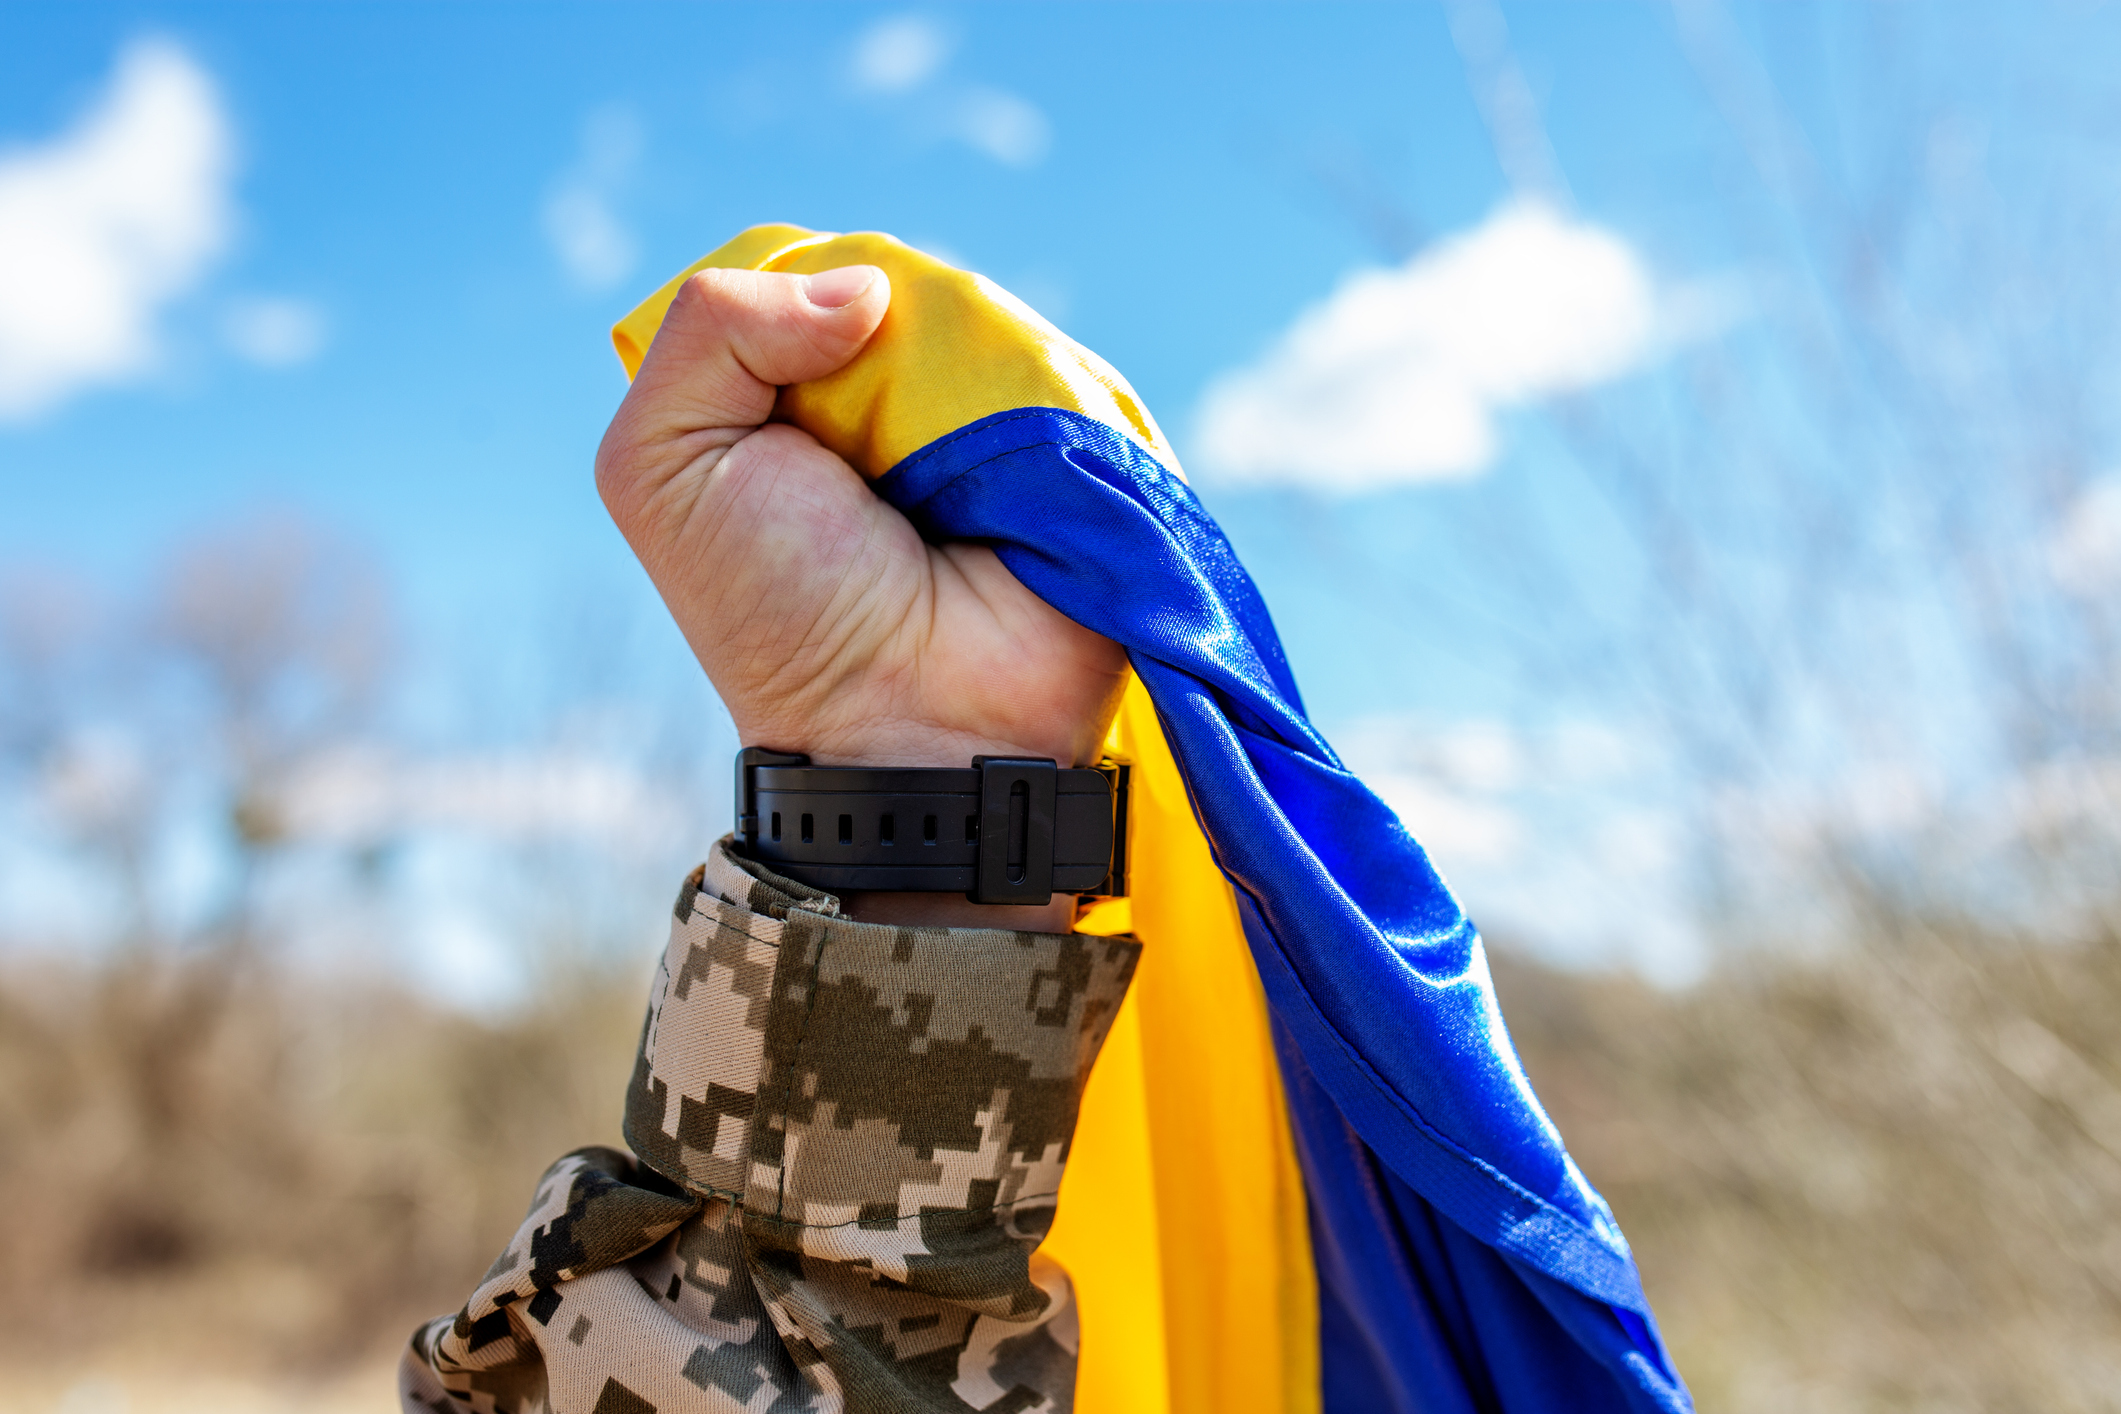 A Ukrainian soldier proudly clutches the Ukraine flag